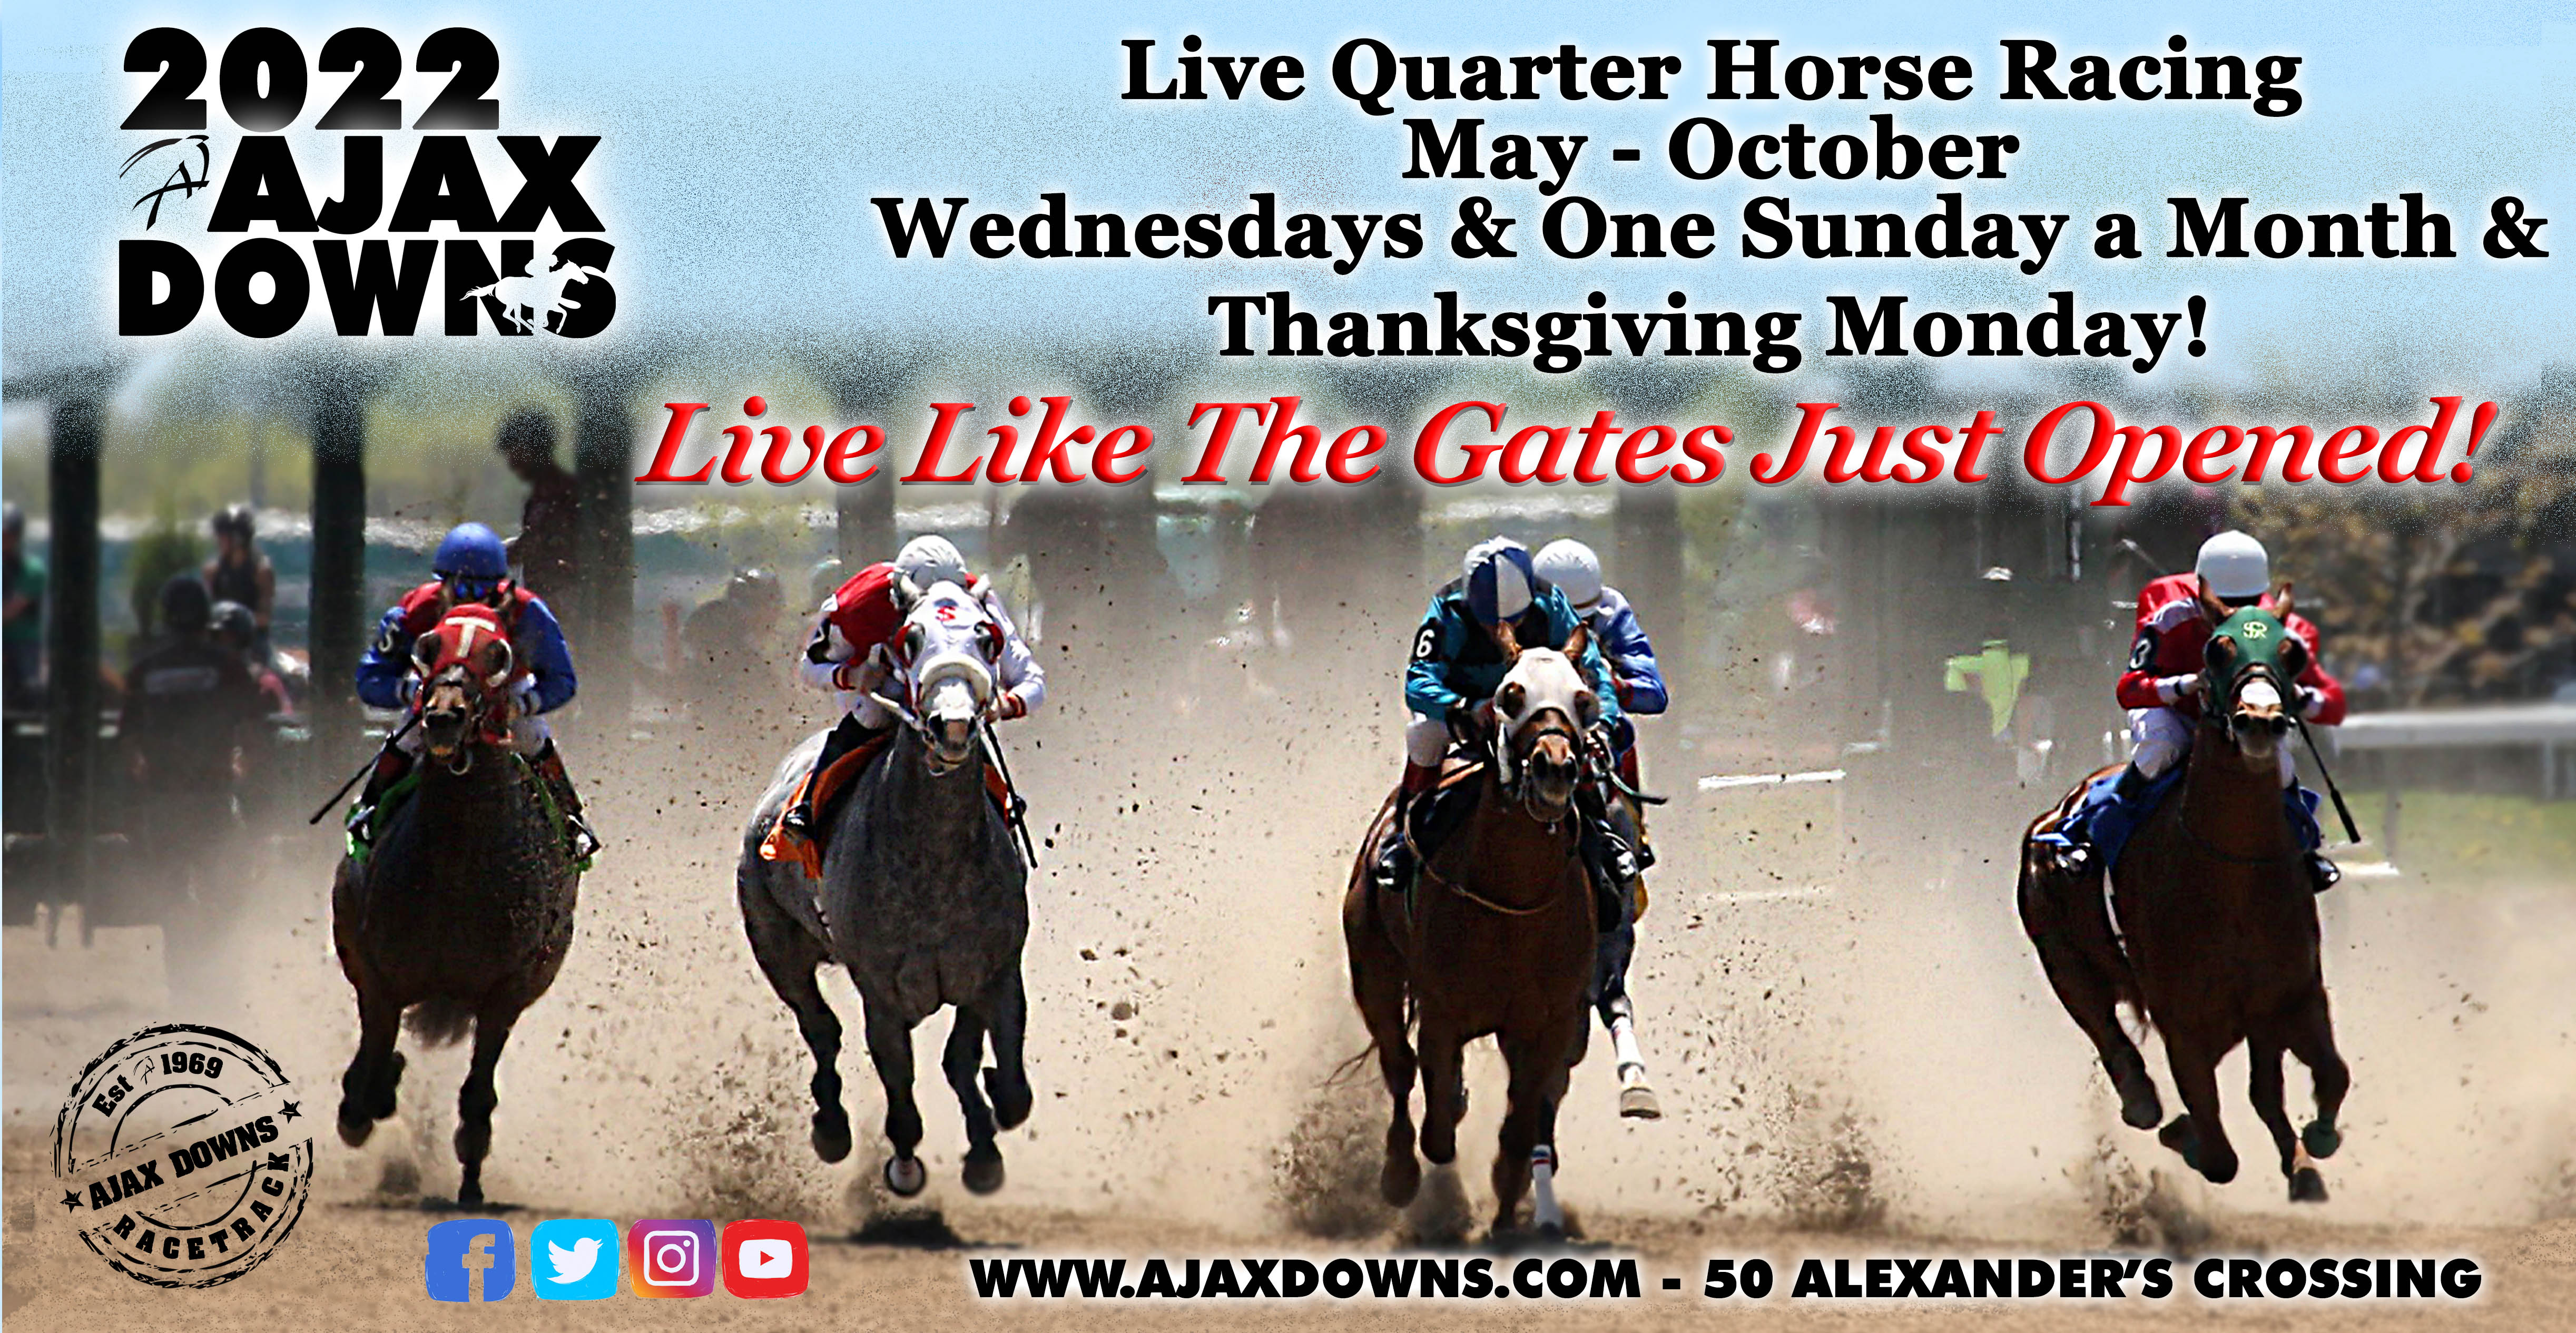 Wednesday Live Quarter horse racing - Ajax Downs